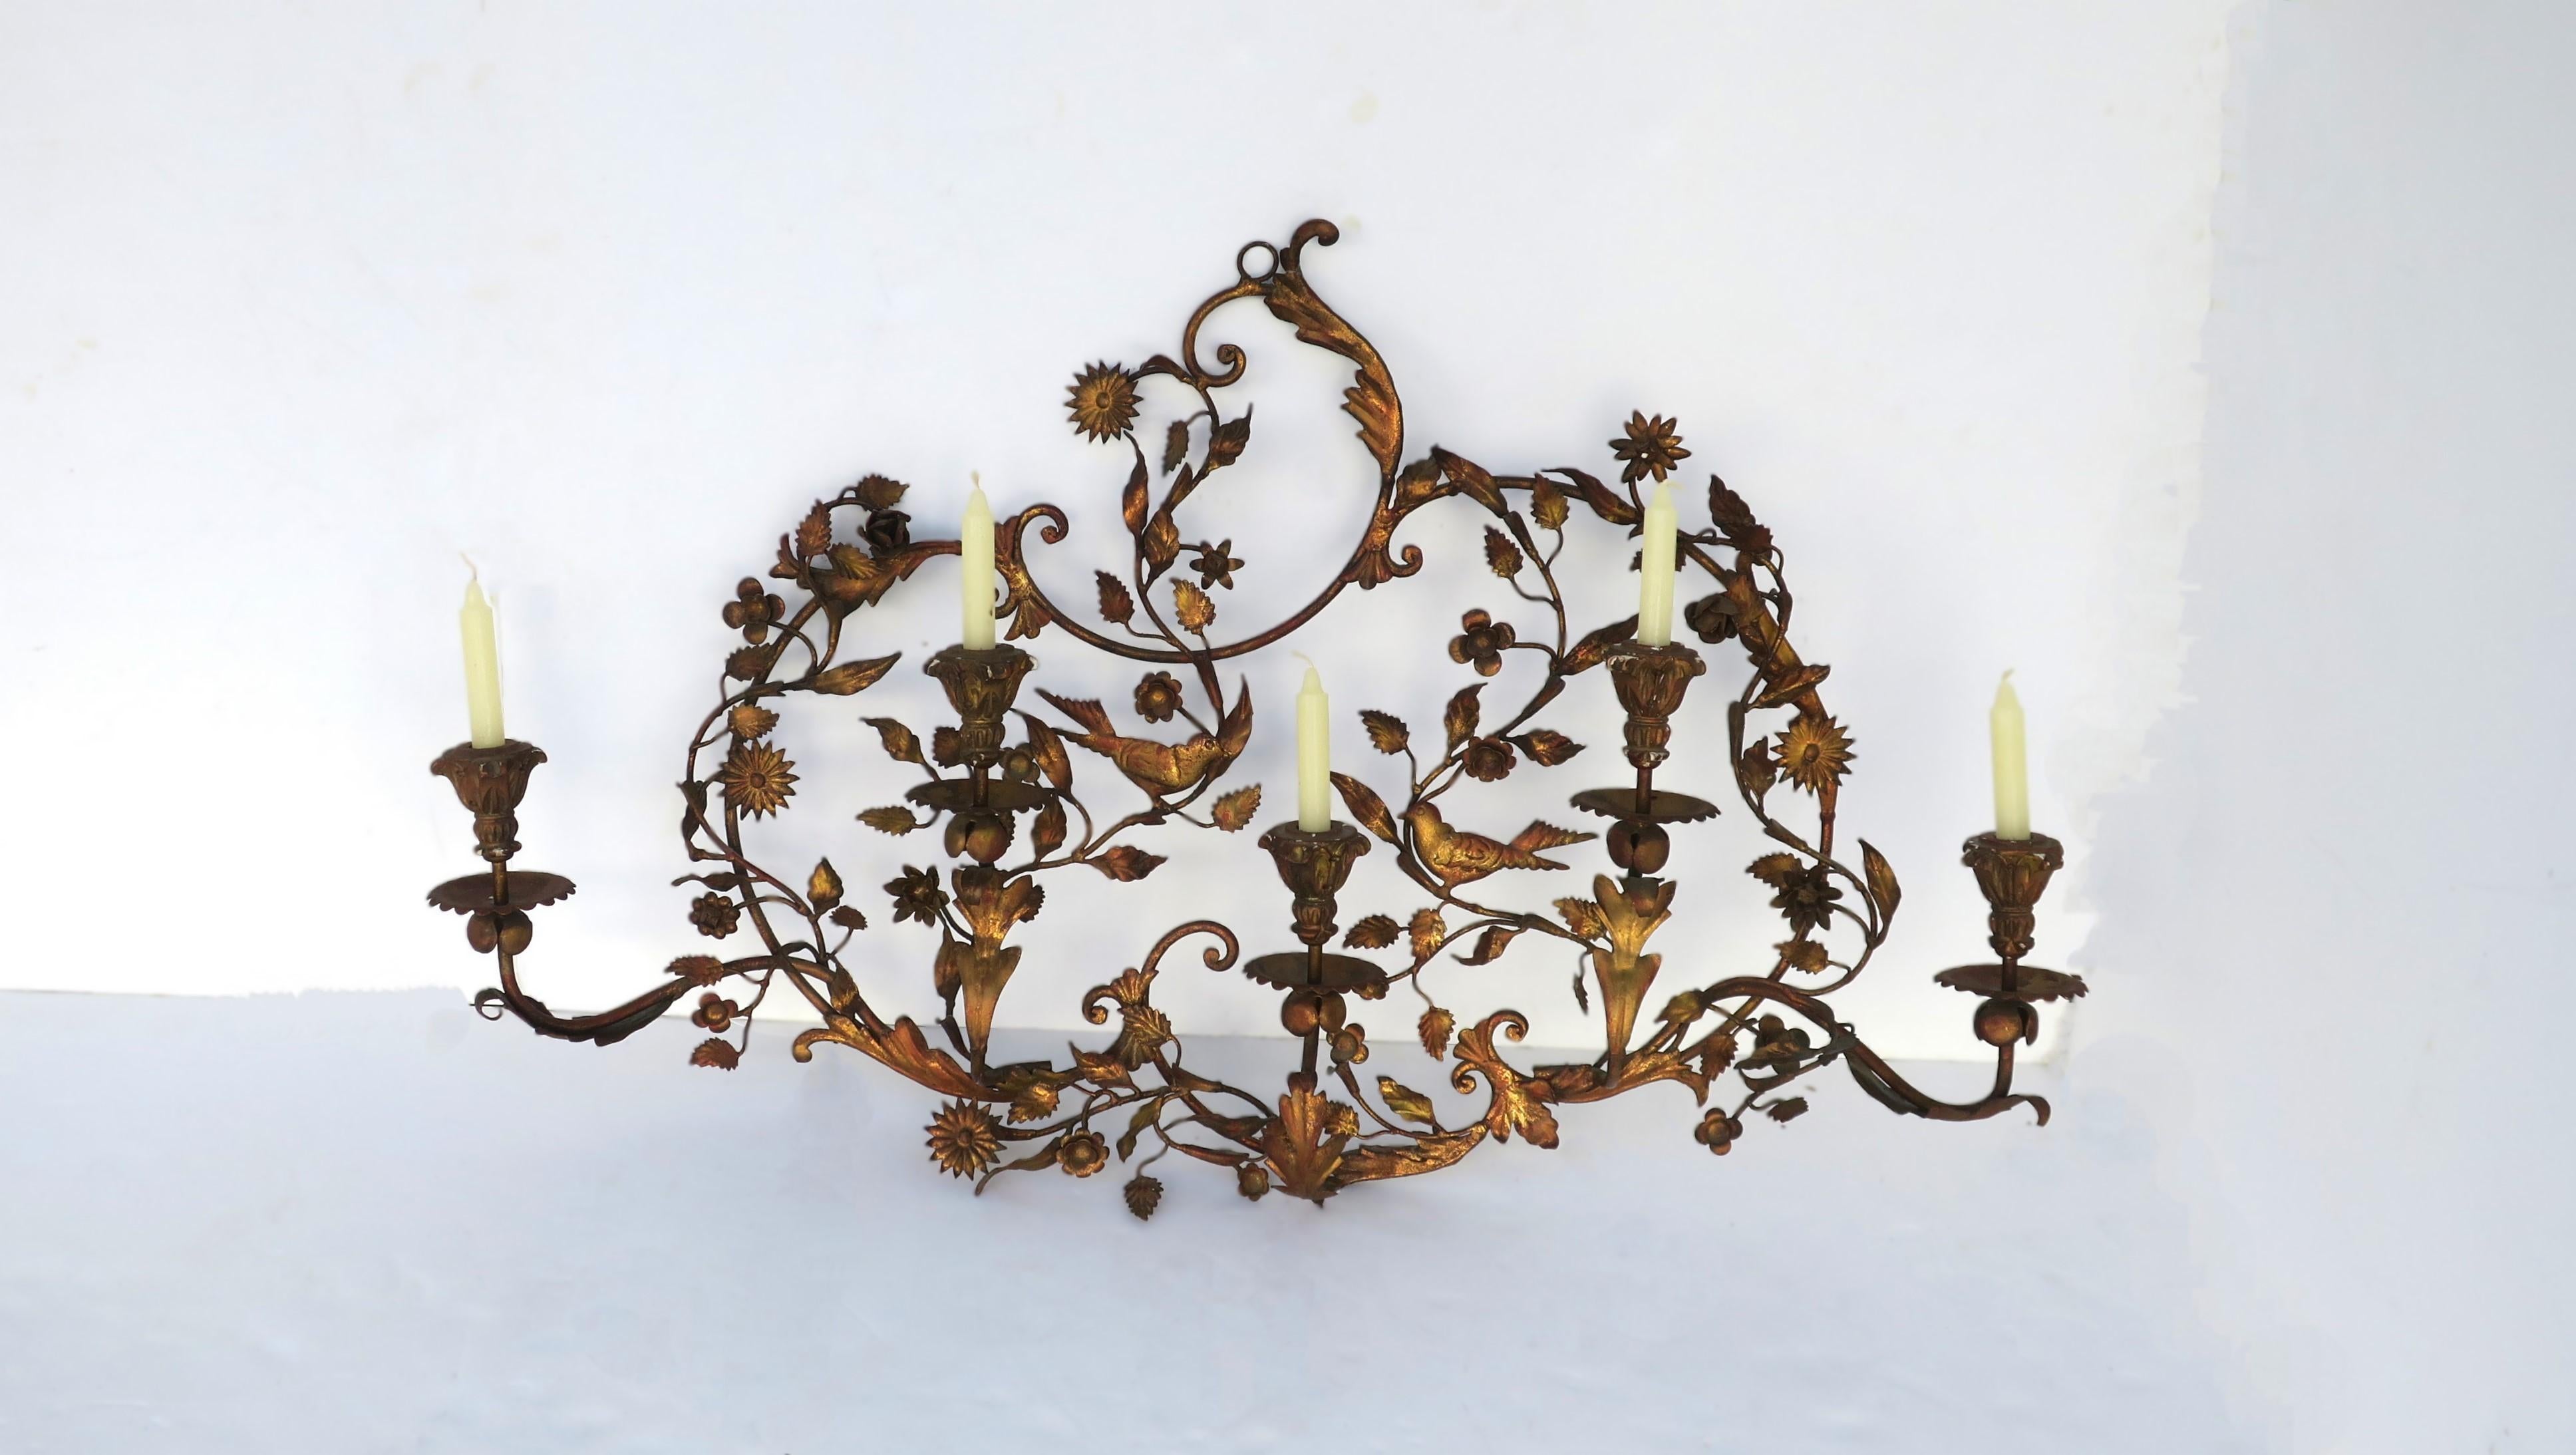 Italienischer Wandleuchter aus vergoldetem Metall mit Vögeln, Blumen und Blättern im Rokokostil, ca. Anfang 20. Jahrhundert, Italien. Ein schönes und relativ großes vergoldetes Wandrelief aus Metall mit Vögeln, Blumen und Blättern, begleitet von